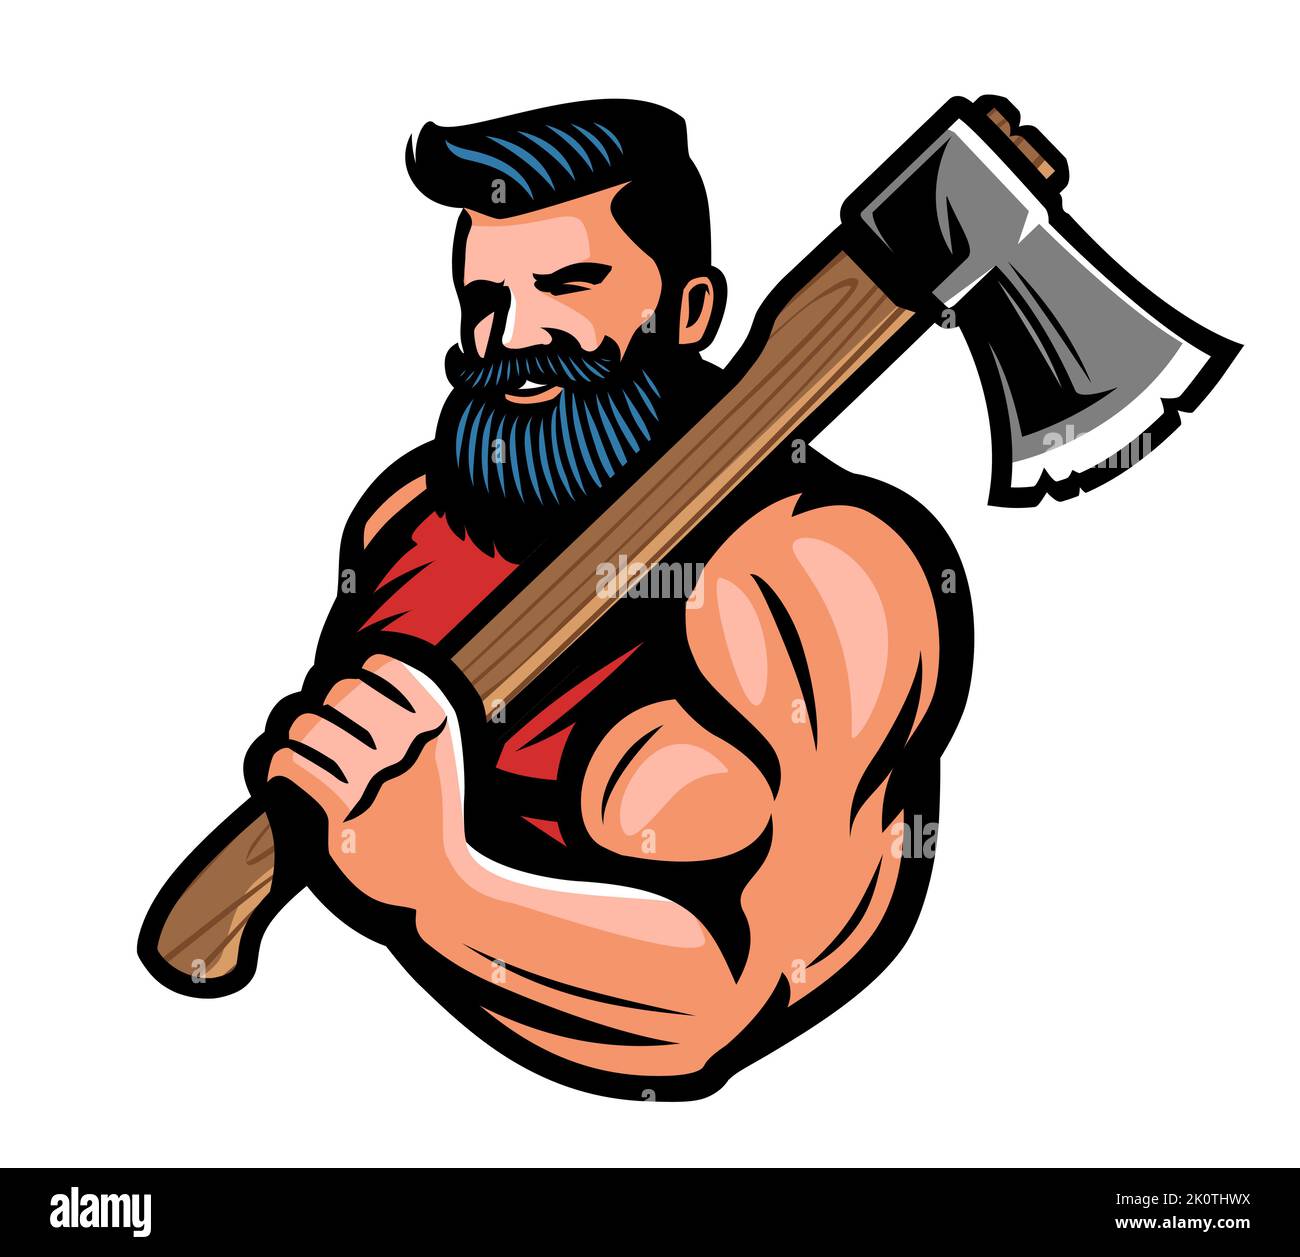 Muskulöser bärtiger Holzfäller mit großer Axt in der Hand. Krieger oder wikinger mit Kampfaxt-Emblem. Abbildung des Maskottchen-Vektorgrafikes Stock Vektor